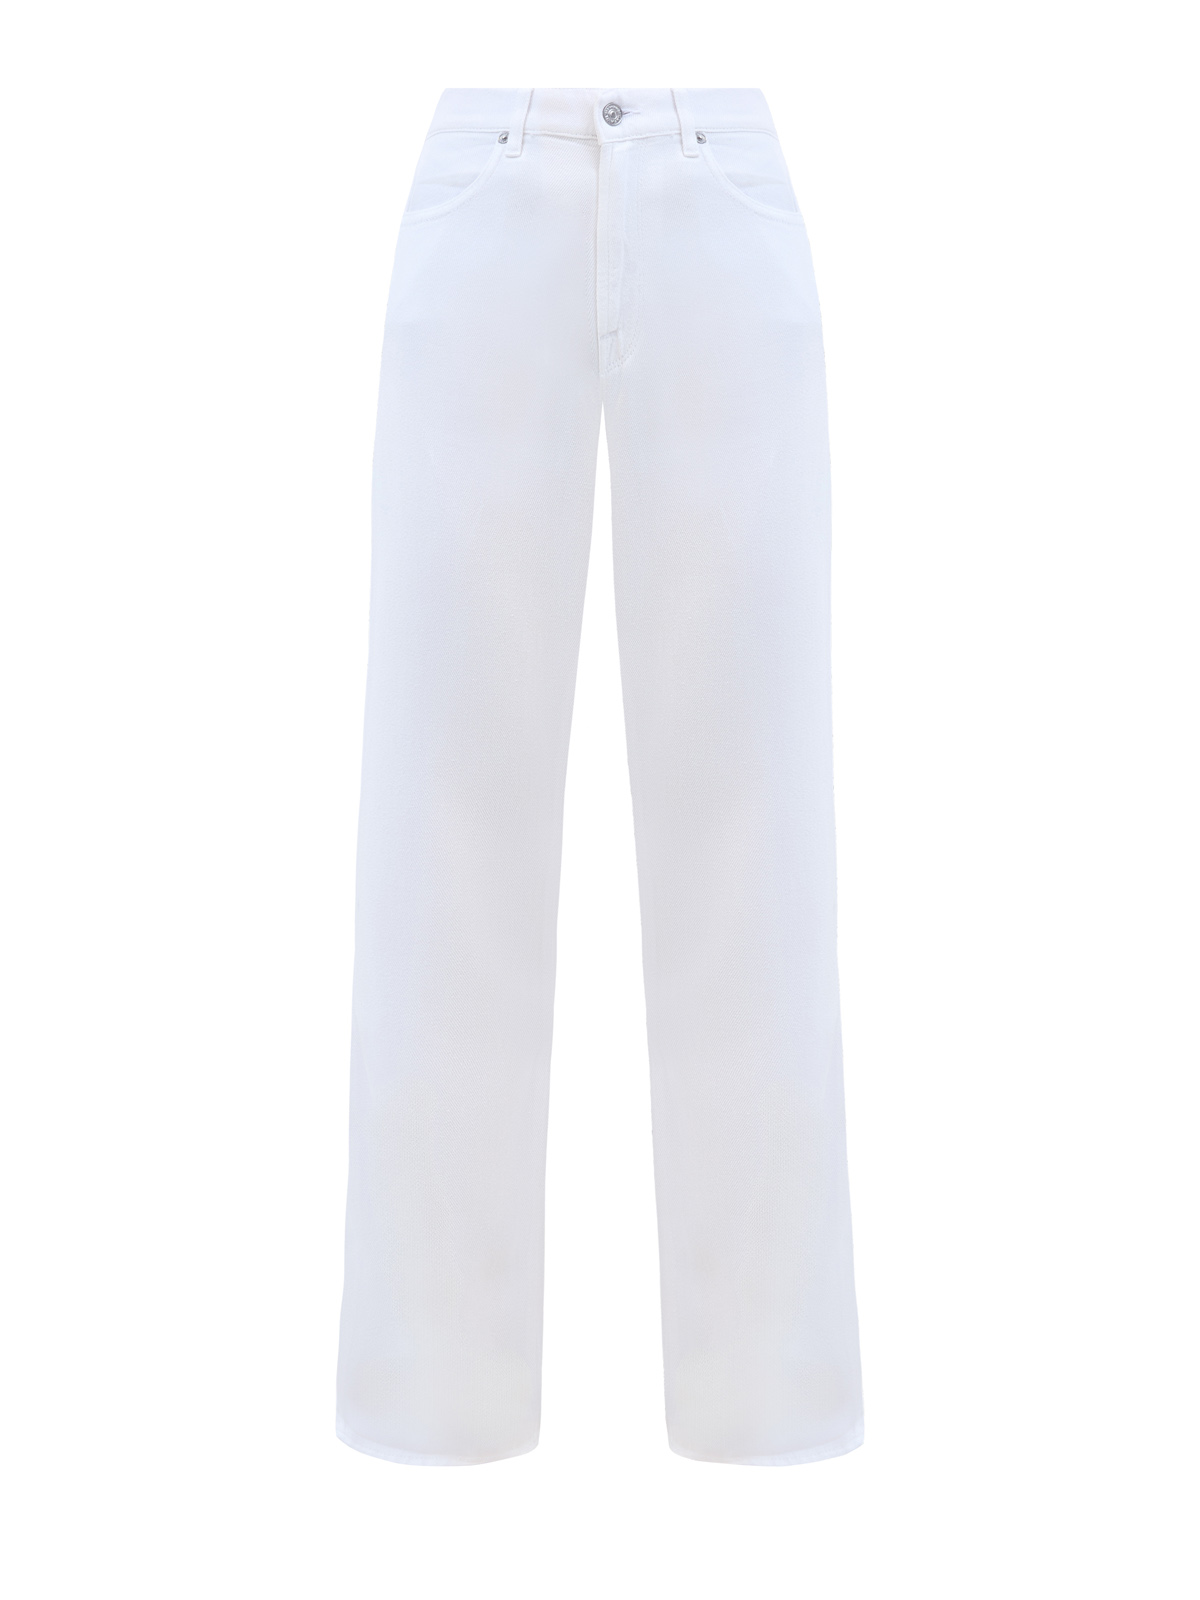 Однотонные джинсы прямого кроя из лиоцелла с нашивкой в тон 7 FOR ALL MANKIND, цвет белый